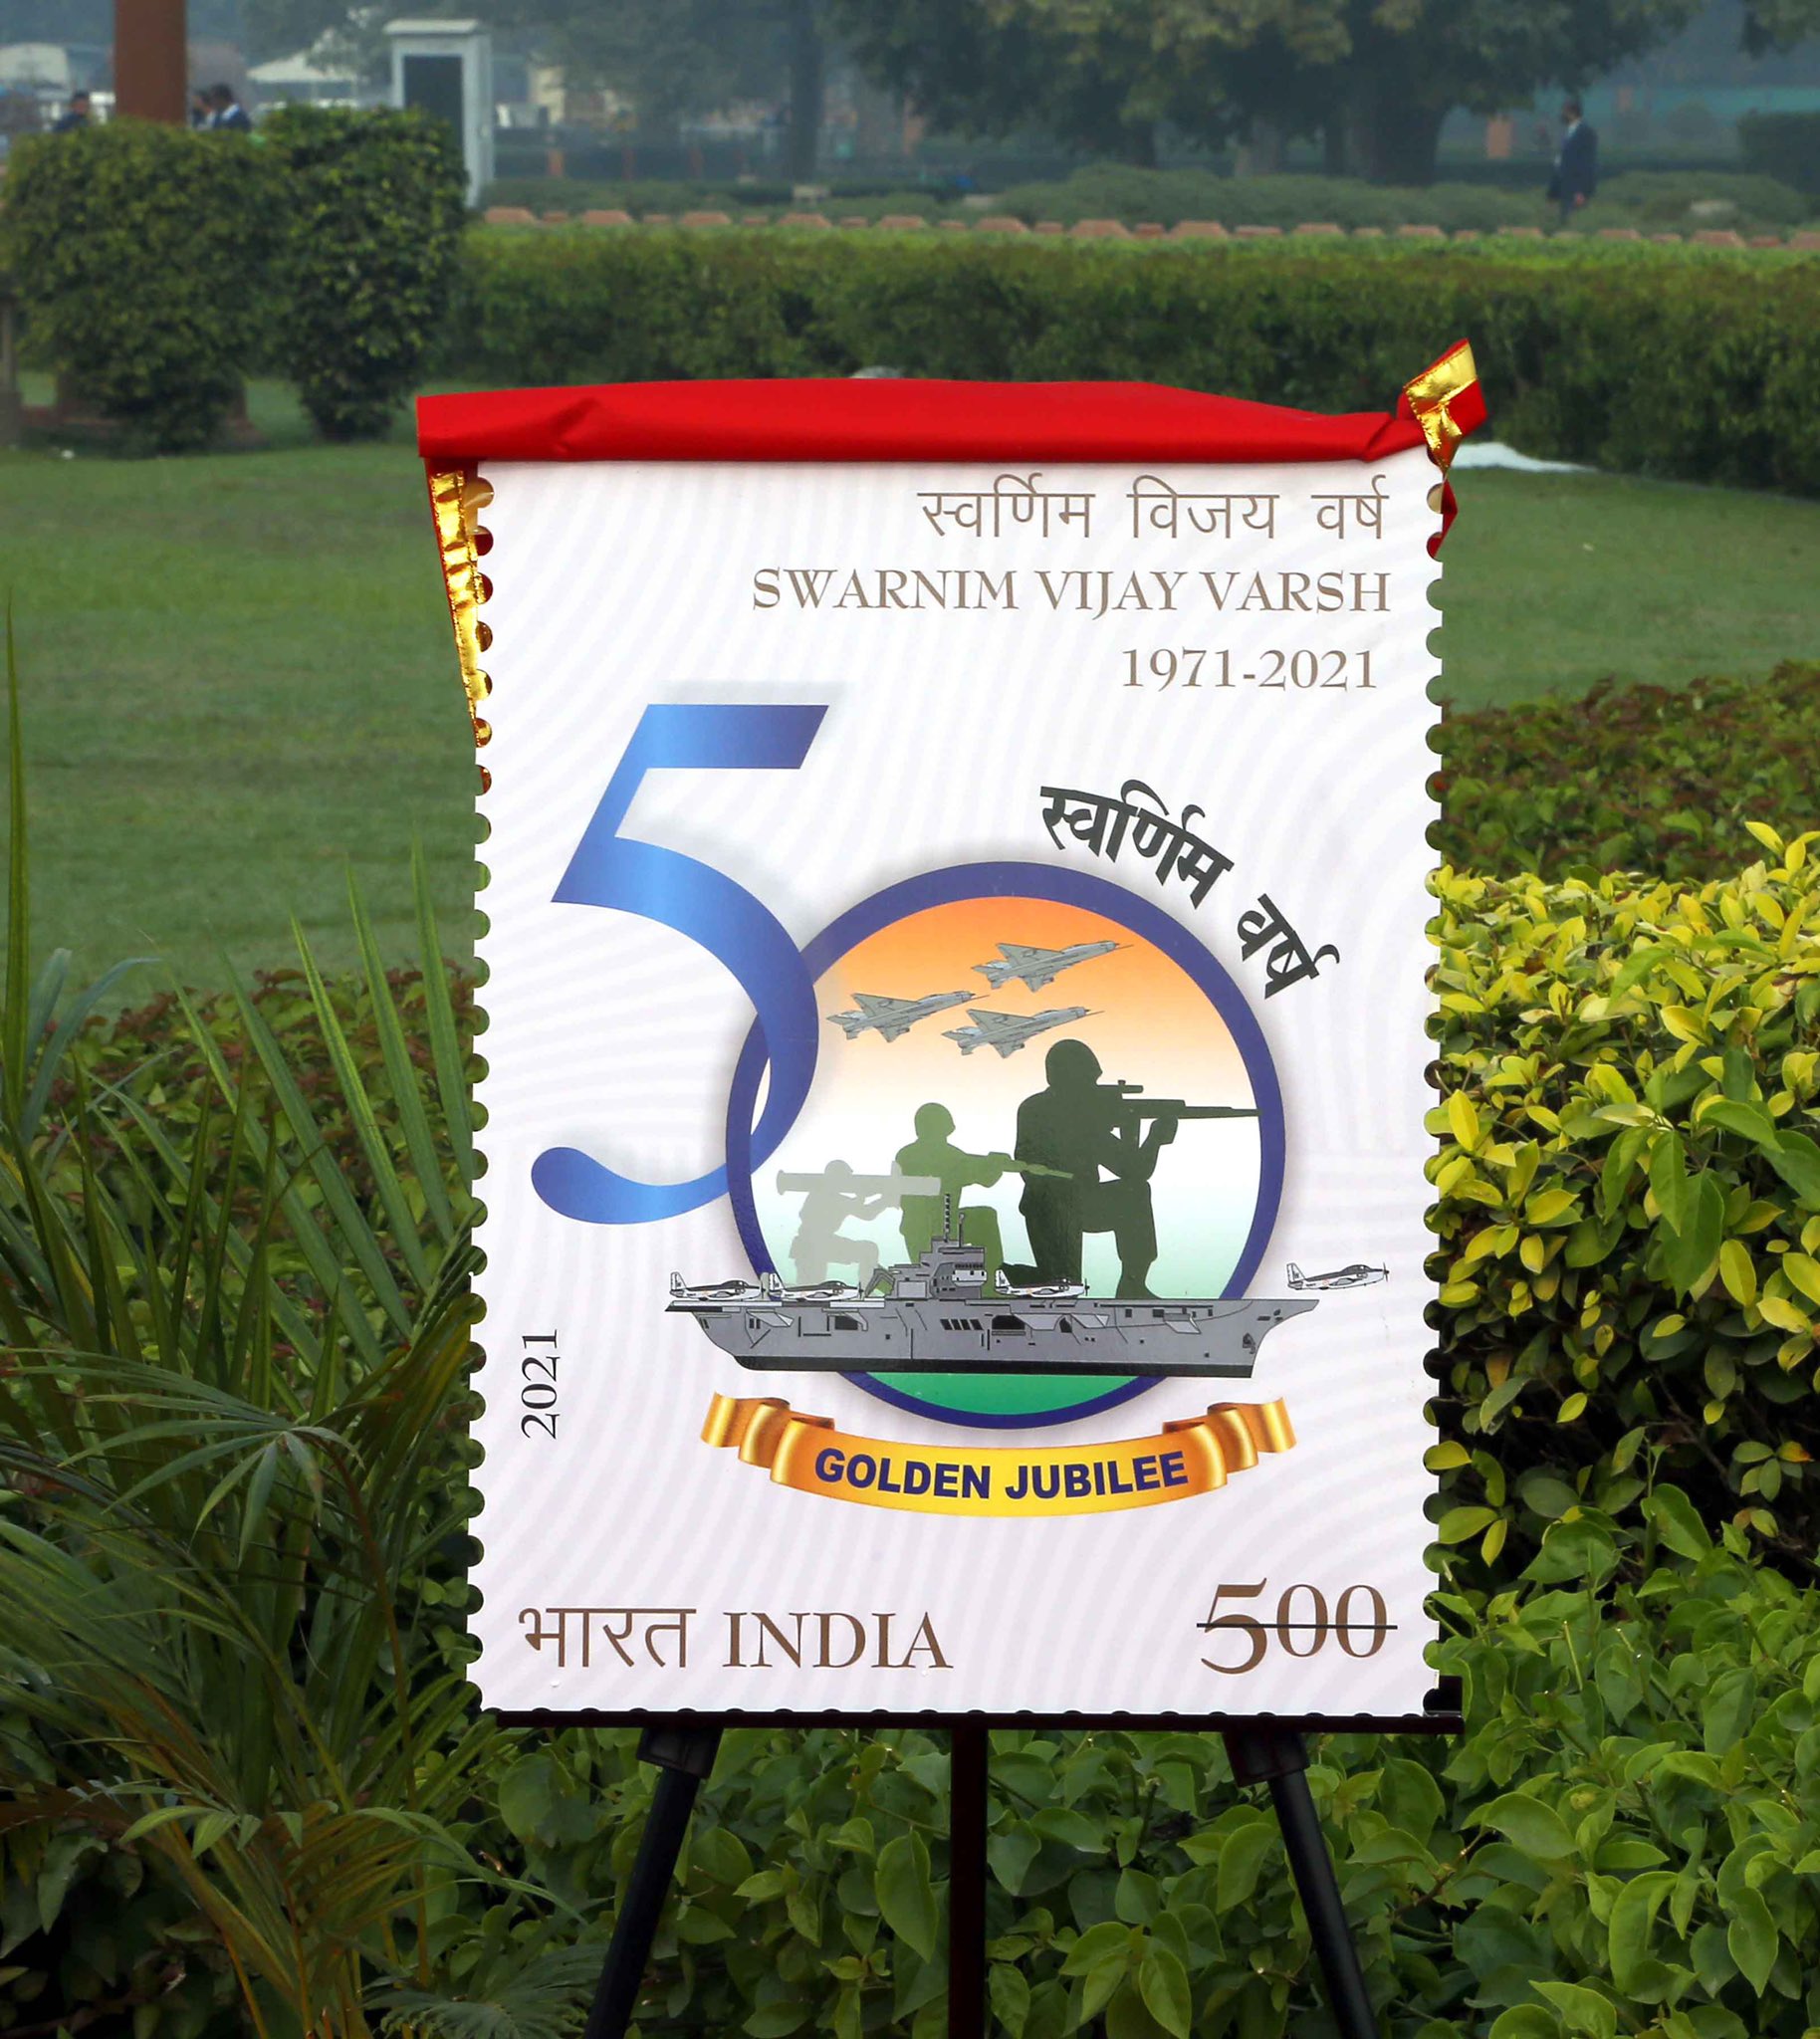 Commemorative Stamp: रक्षा मंत्री ने राष्ट्रीय युद्ध स्मारक पर ‘स्वर्णिम विजय वर्ष’ डाक टिकट जारी किया